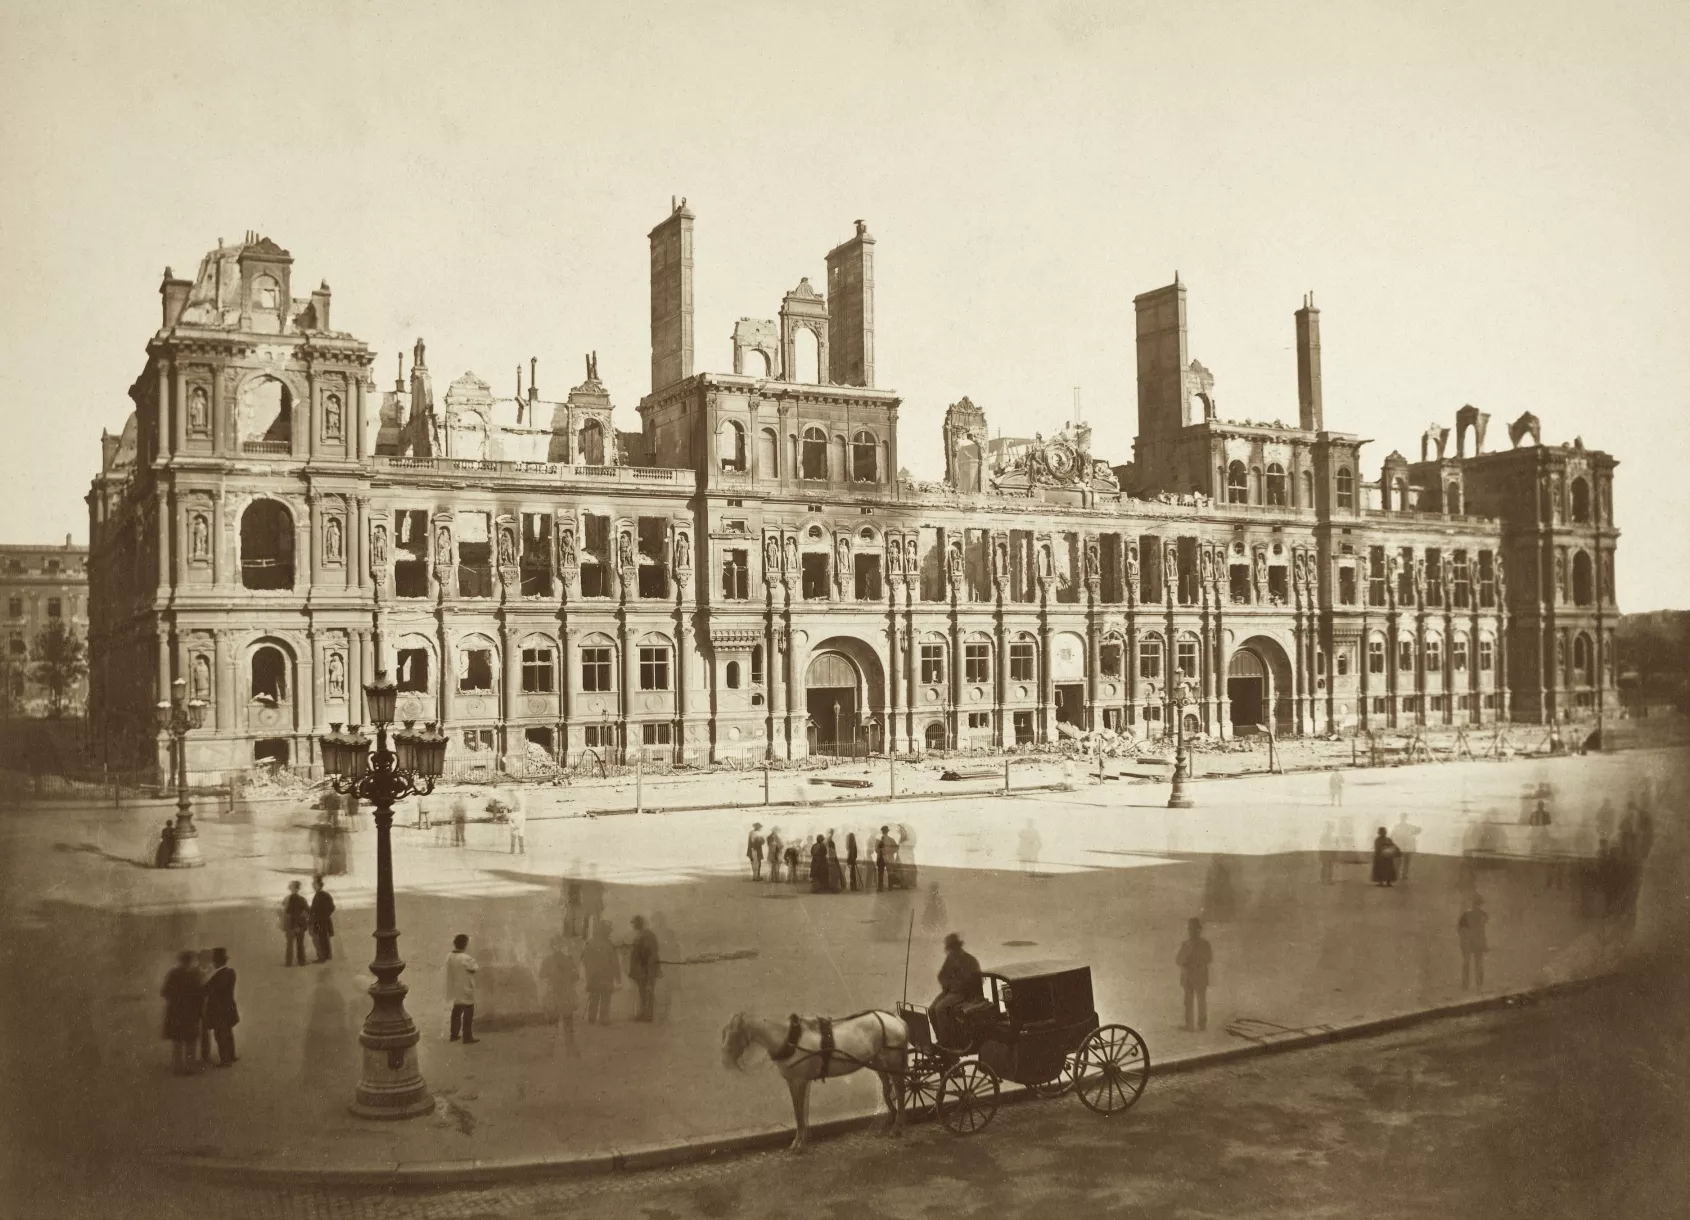 The Hôtel de Ville after the fire